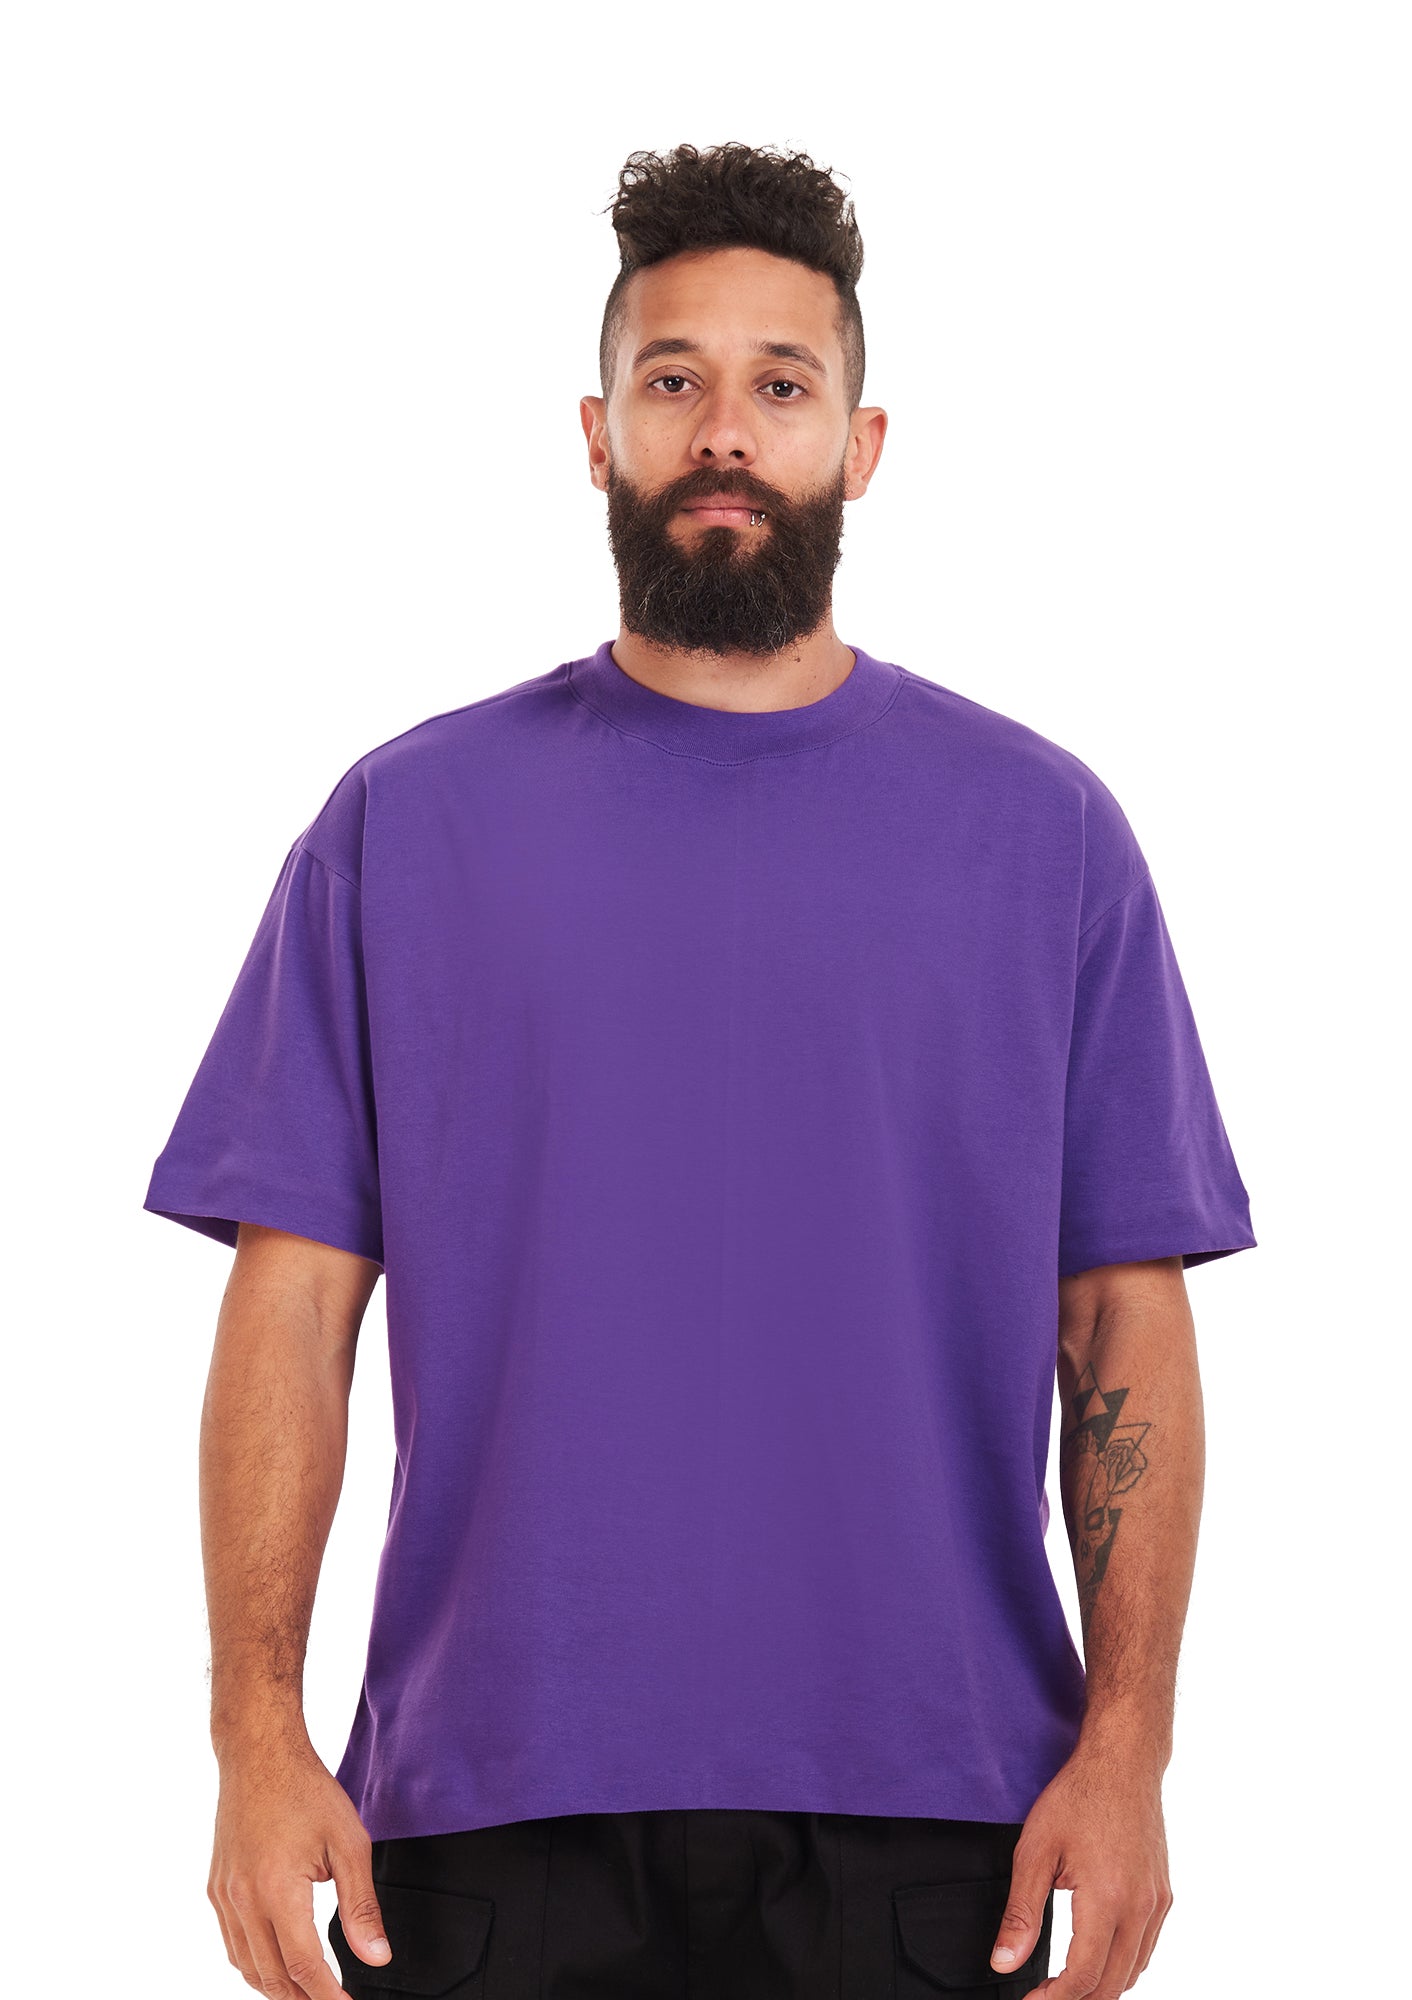 Oversized plain Purple T-shirt .